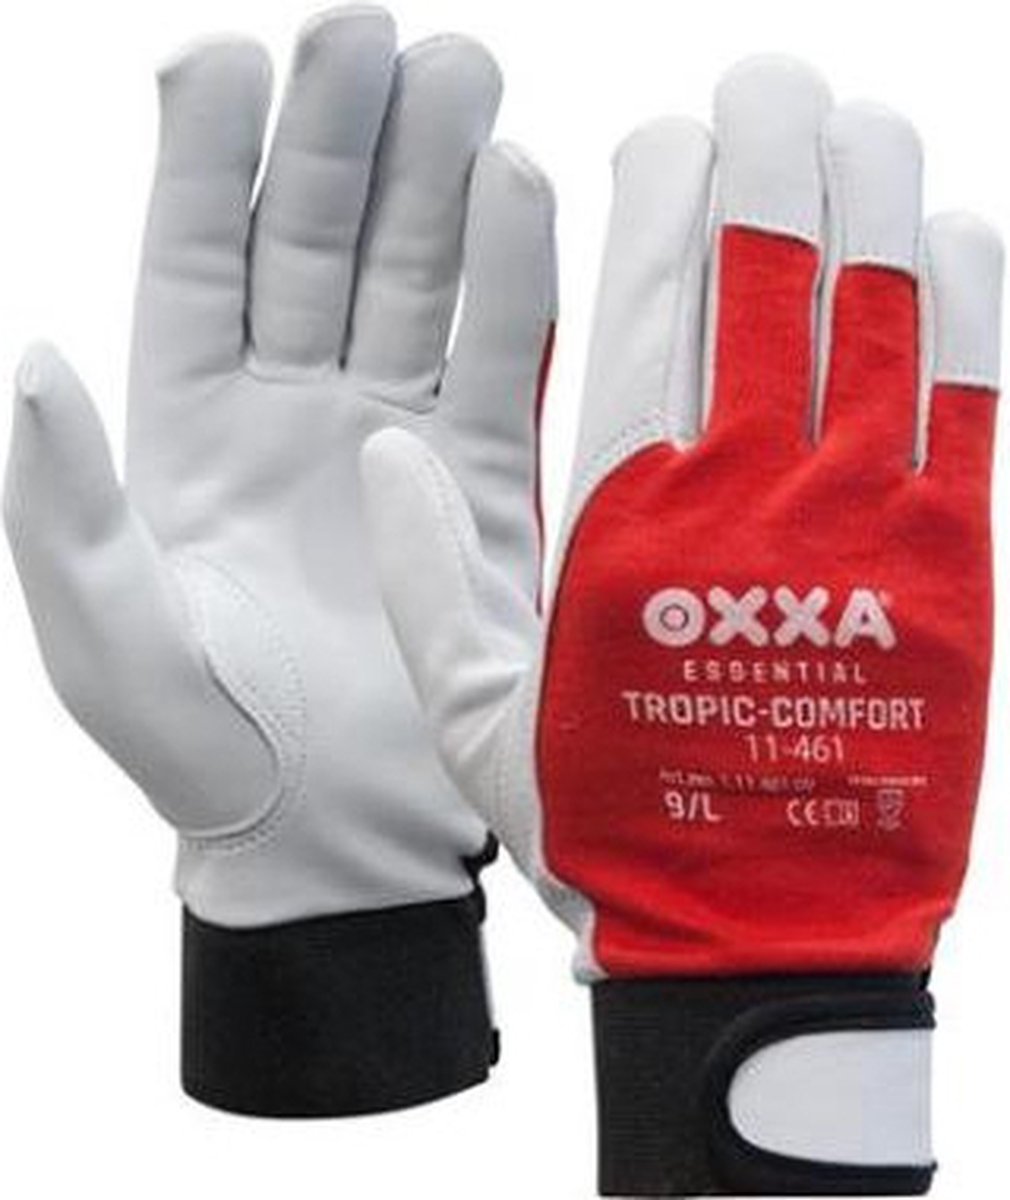 OXXA Tropic-Comfort 11-461 handschoen, 12 paar M